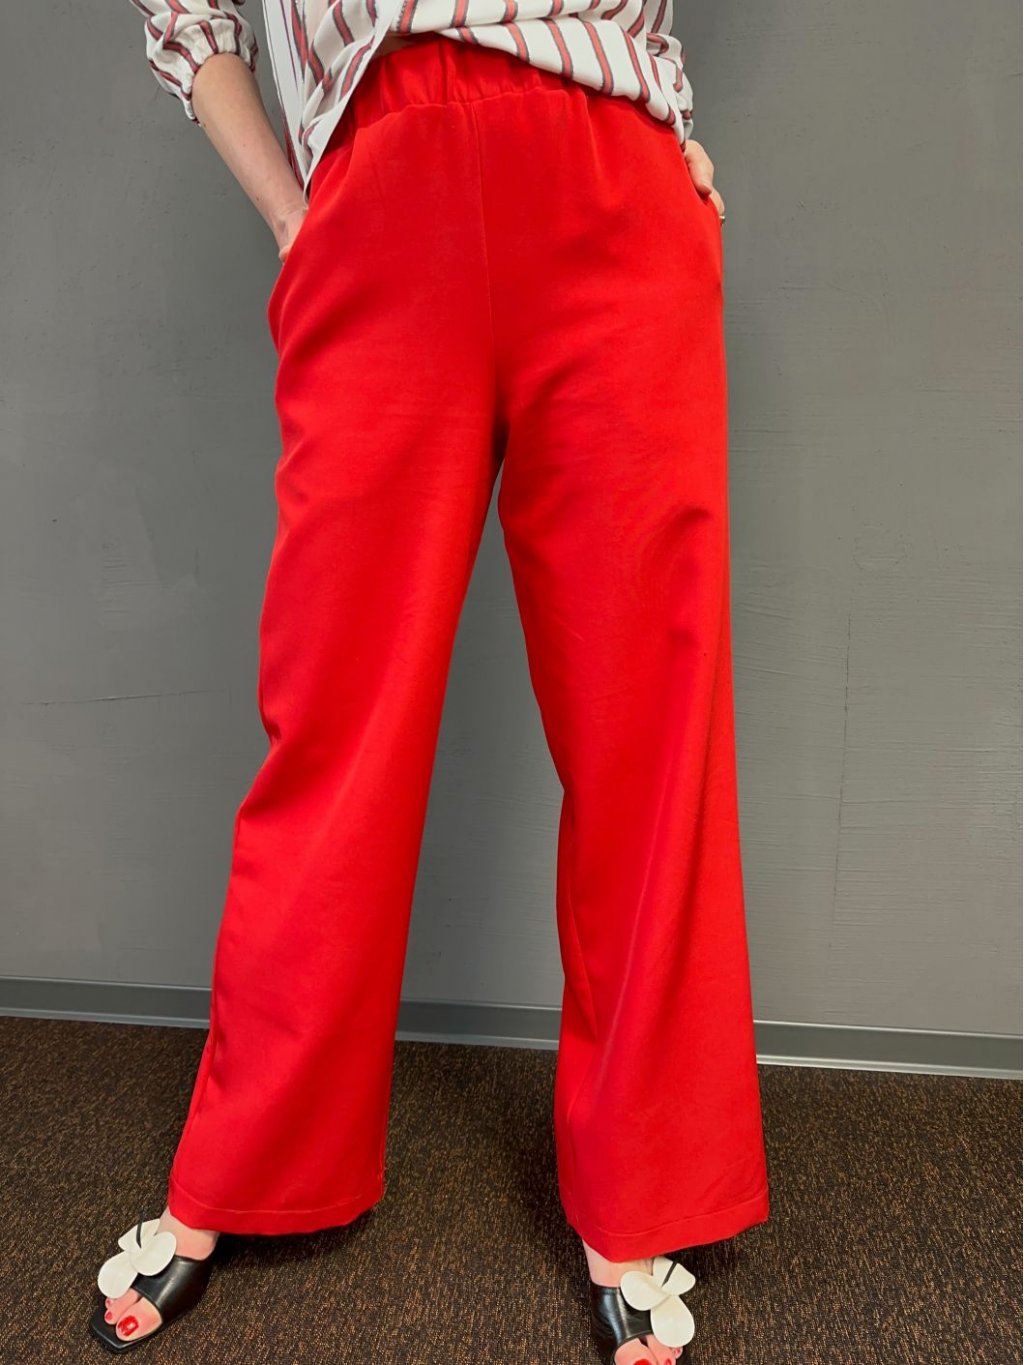 Kalhoty So Comfy červené široké